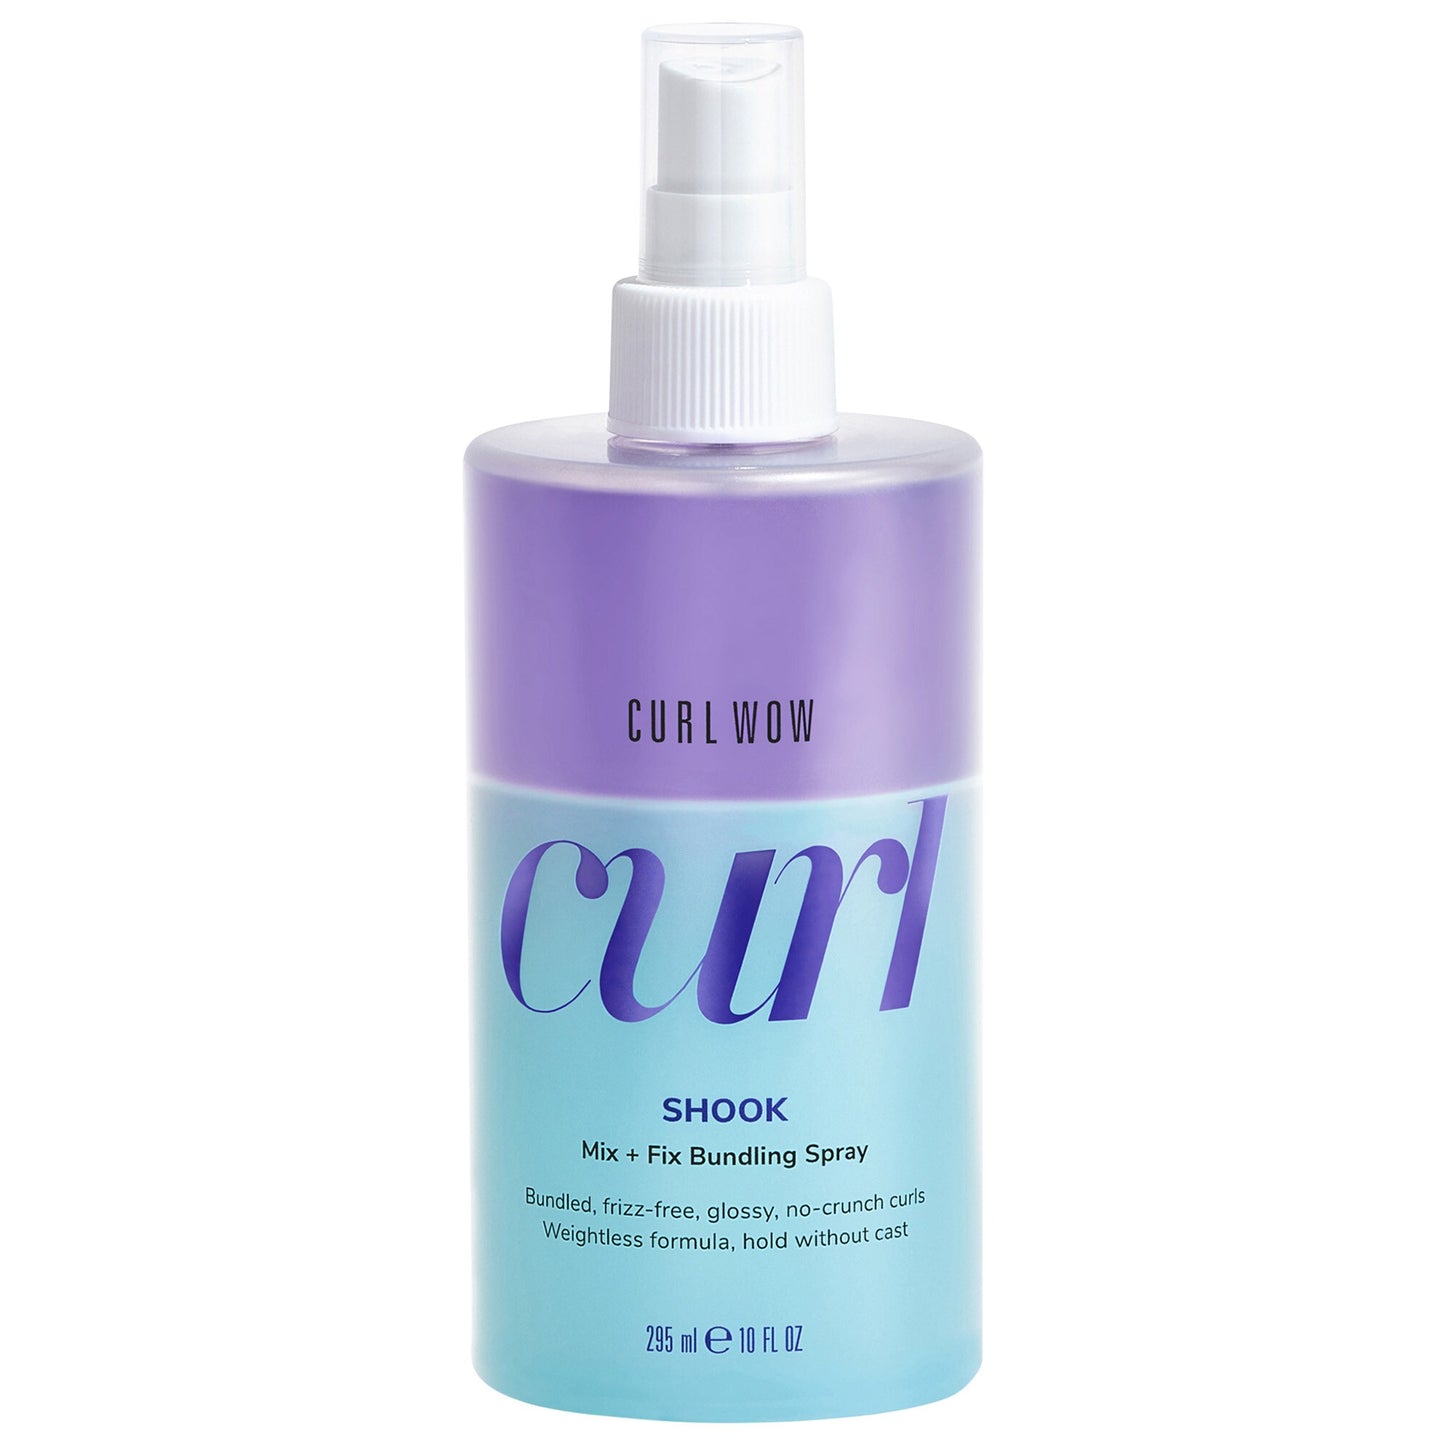 Curl Wow Shook Mix + Fix Bundling Spray